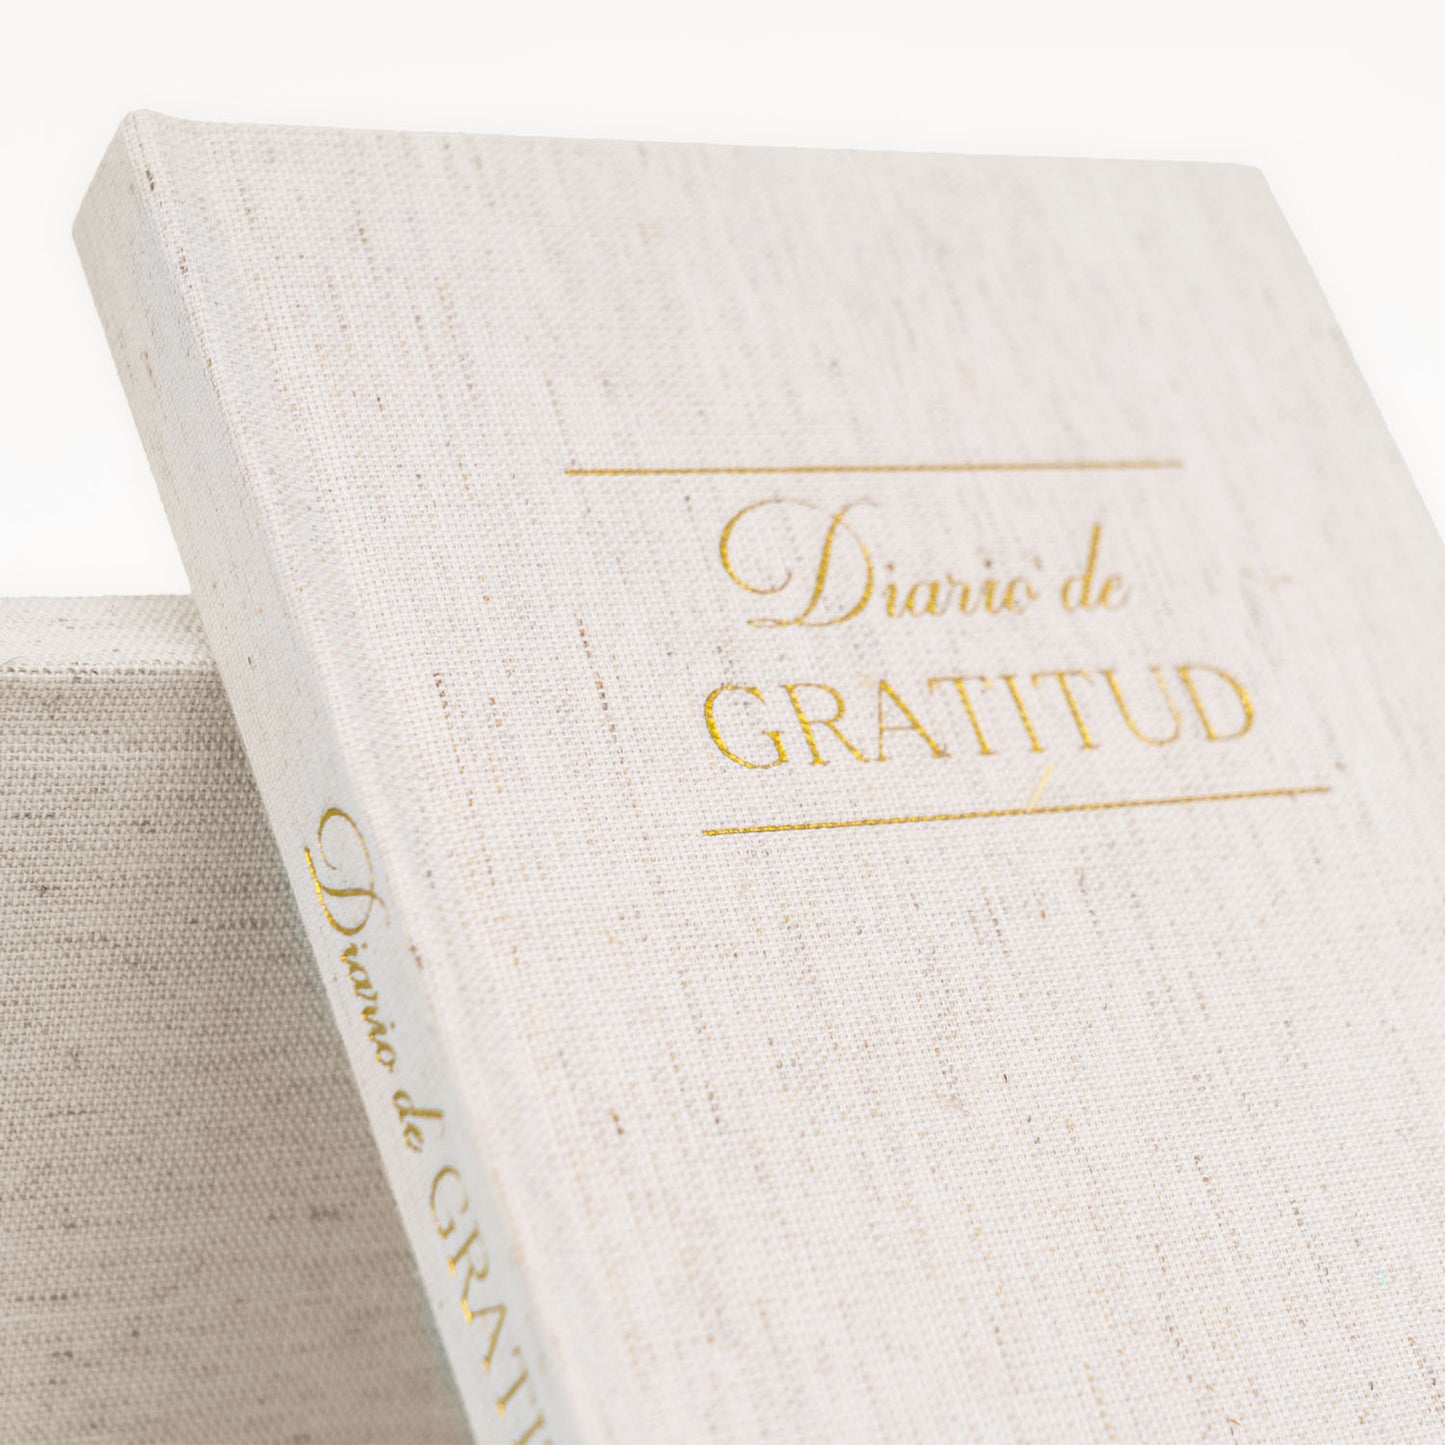 DIARIO de GRATITUD – Diario de Gratitud